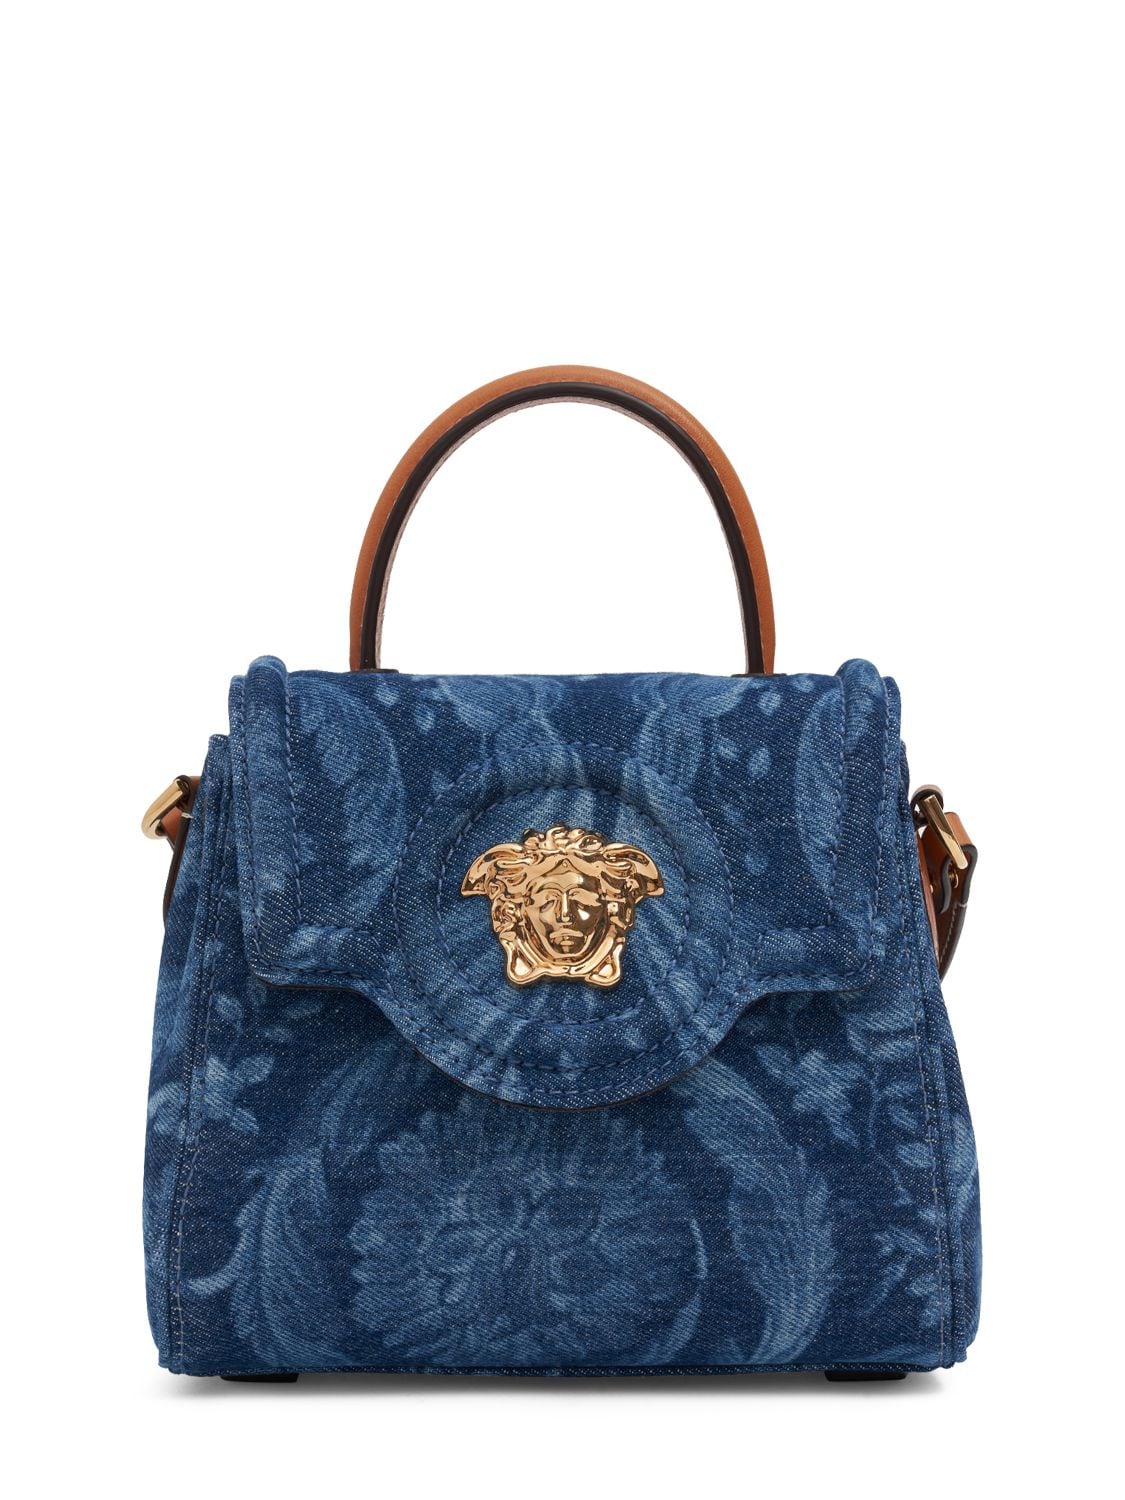 Versace La Medusa Floral Denim Top-handle Bag In Blue Camel